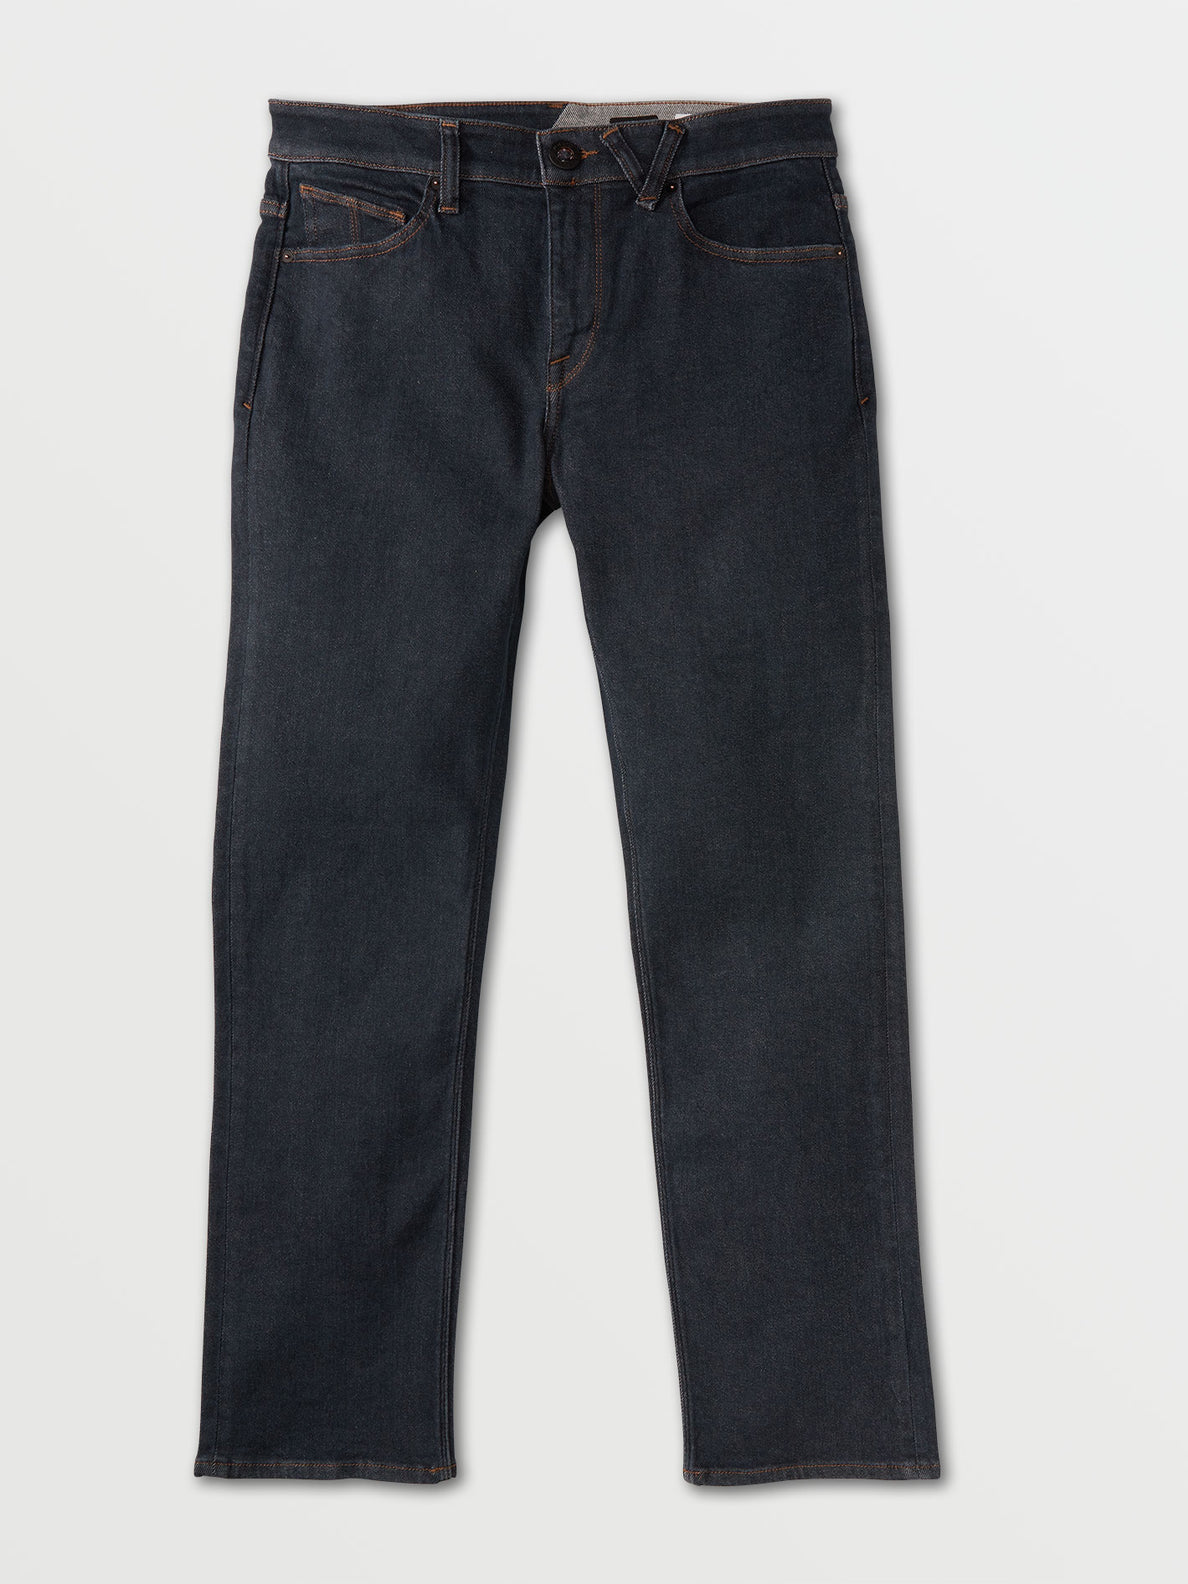 Solver Modern Fit Jeans - Grey Indigo Rinse (A1931503_GIR) [F]